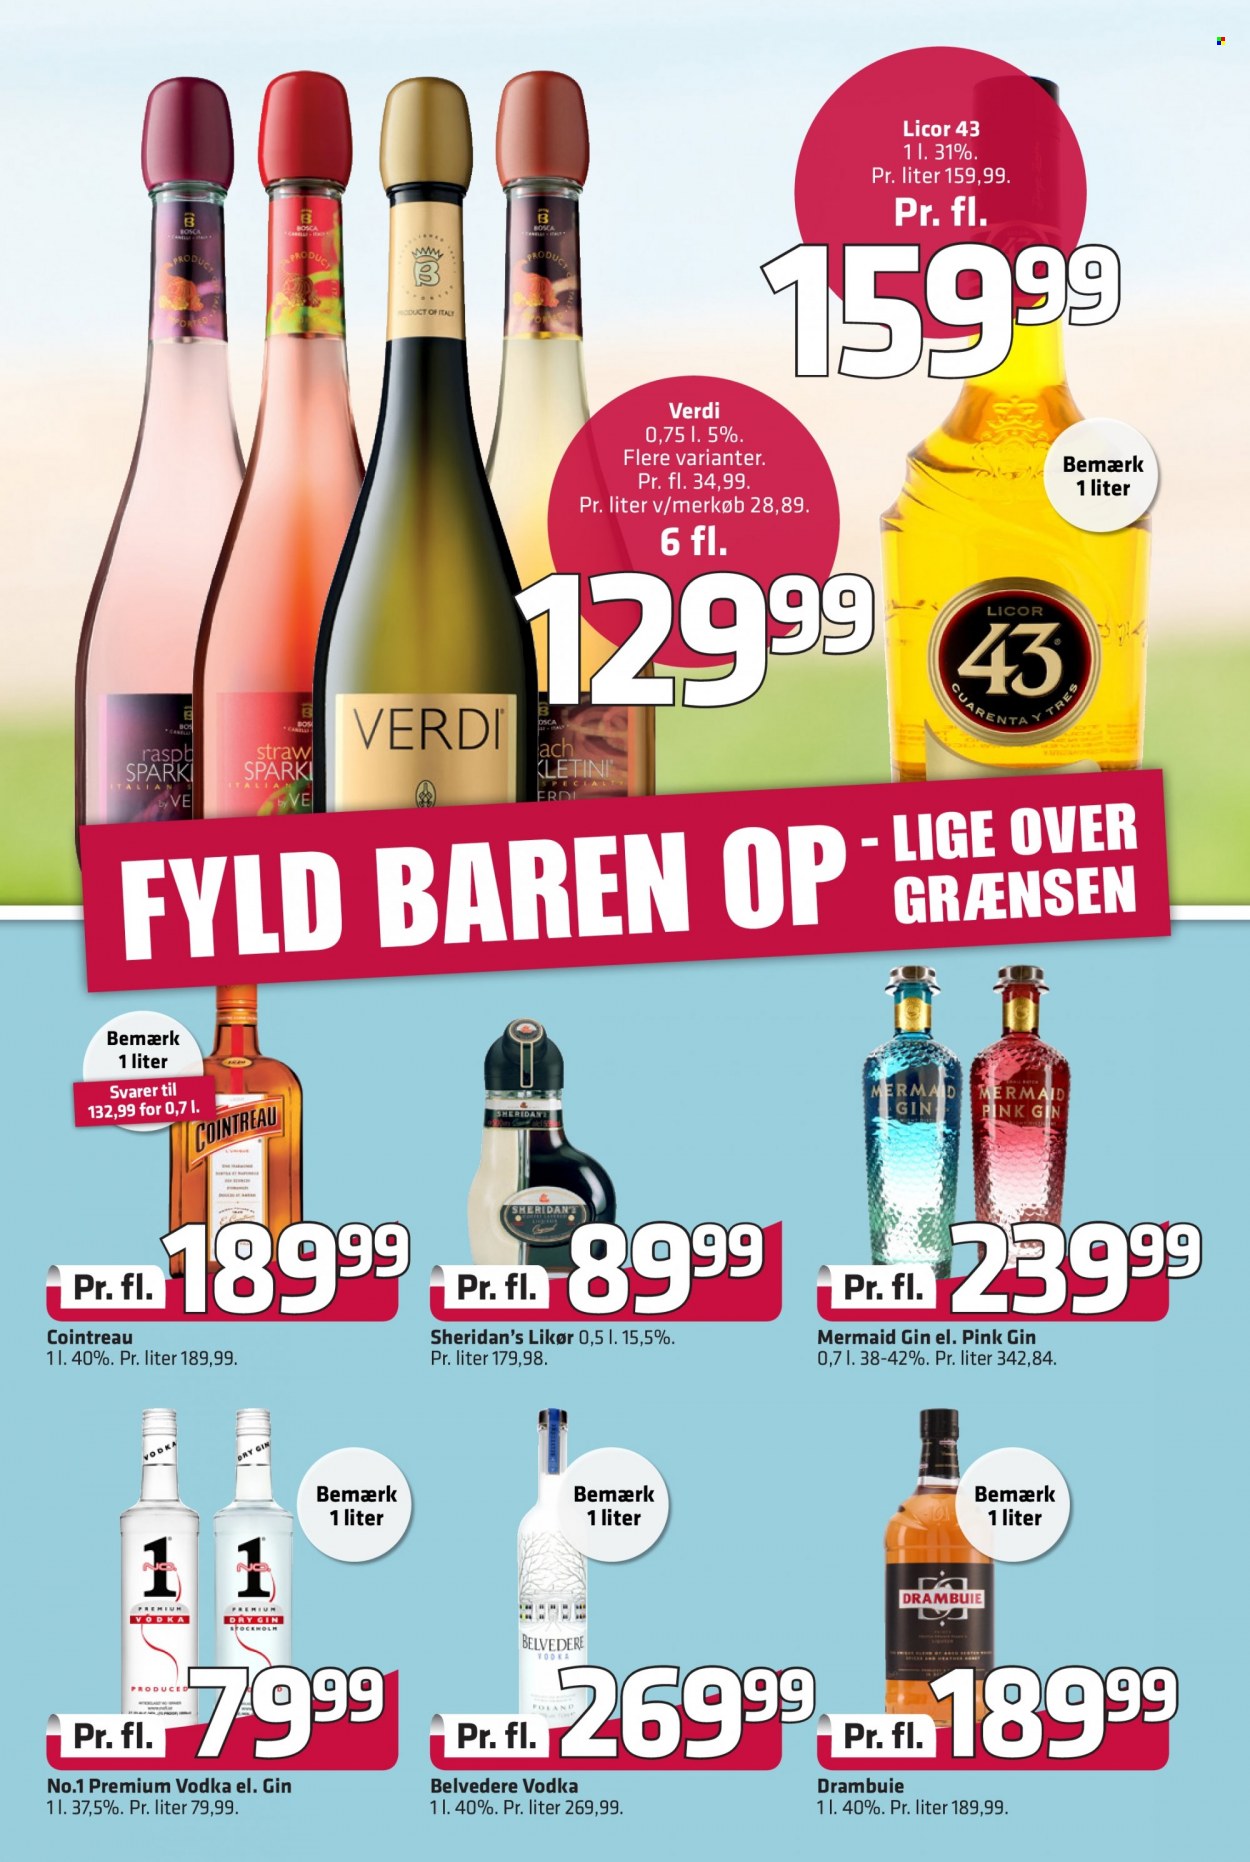 thumbnail - Fleggaard reklamblad - 28/9 2022 - 11/10 2022 - varor från reklamblad - cointreau, Drambuie, Vodka, gin, likör. Sida 21.